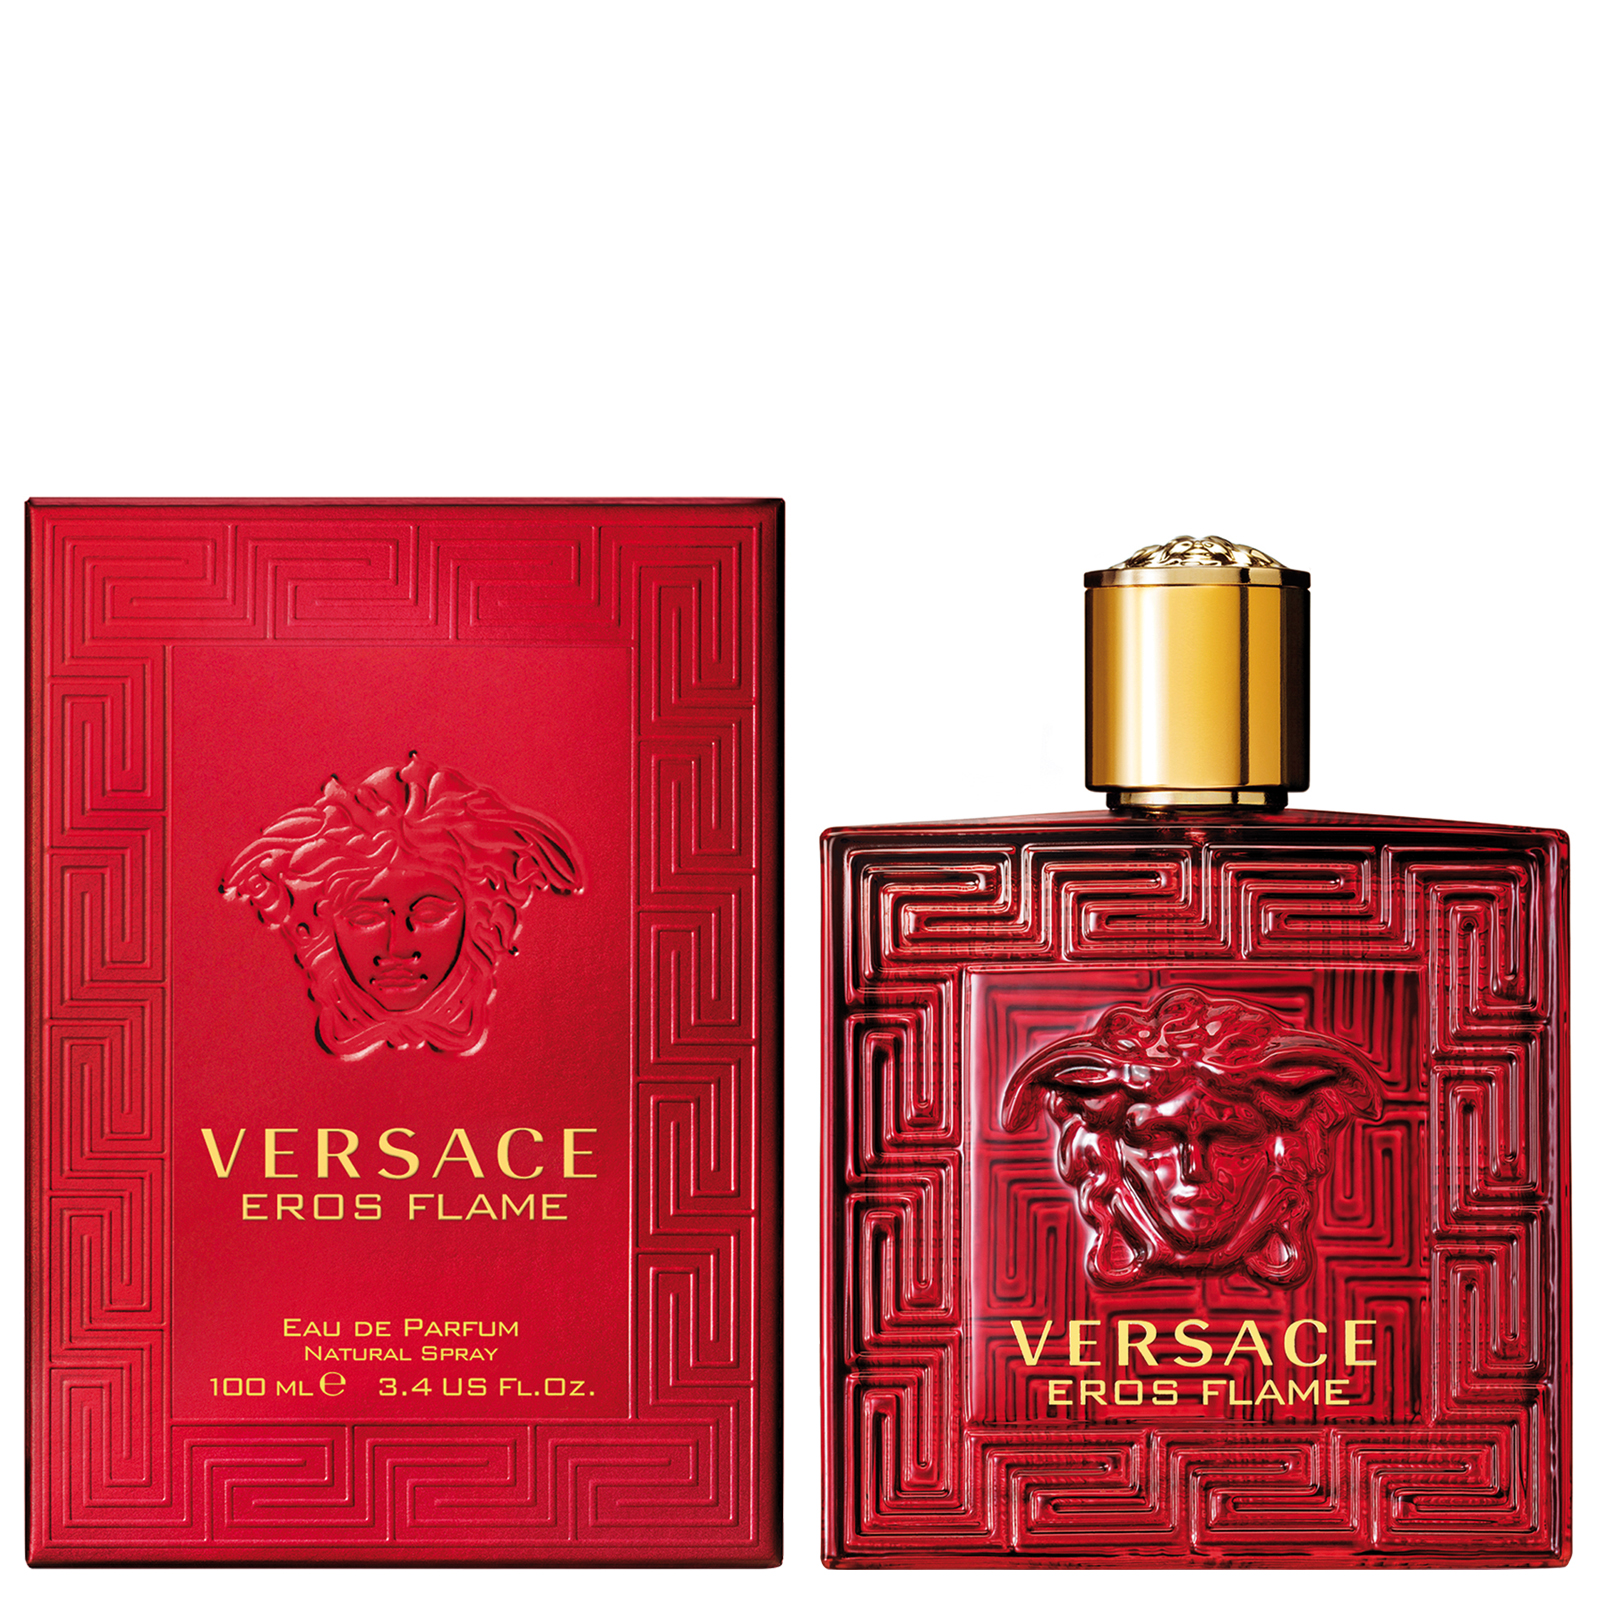 Versace Eros Flame Eau de Parfum sp 